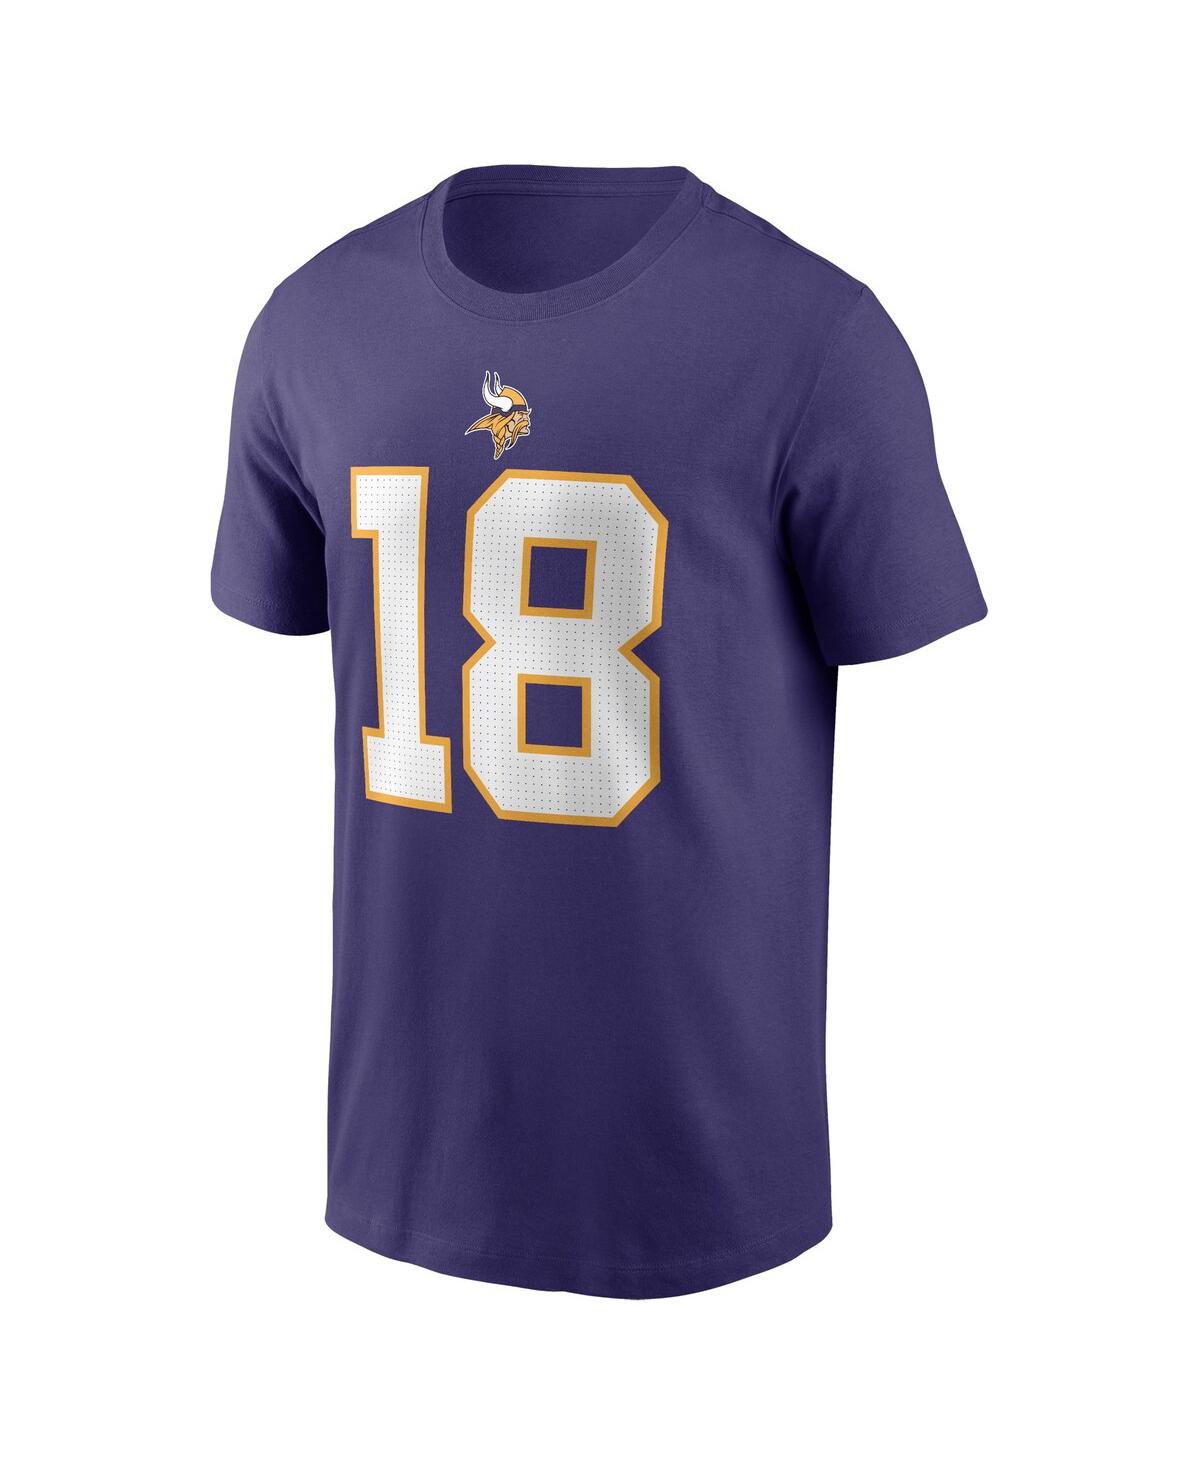 Shop Nike Men's  Justin Jefferson Purple Minnesota Vikings Classic Player Name And Number T-shirt